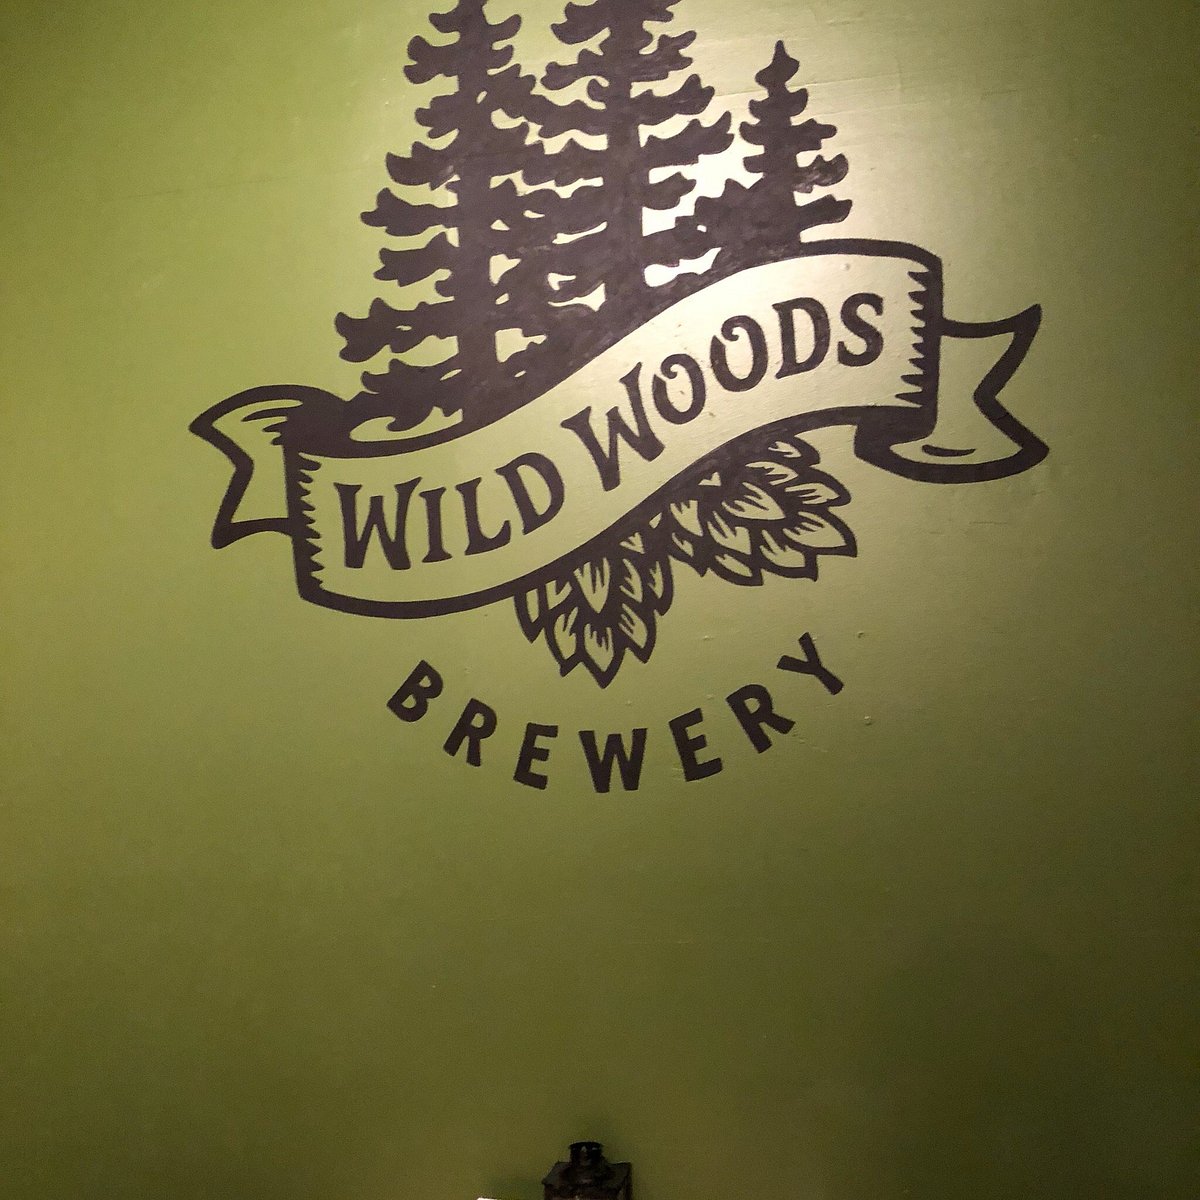 Wild Woods Brewery